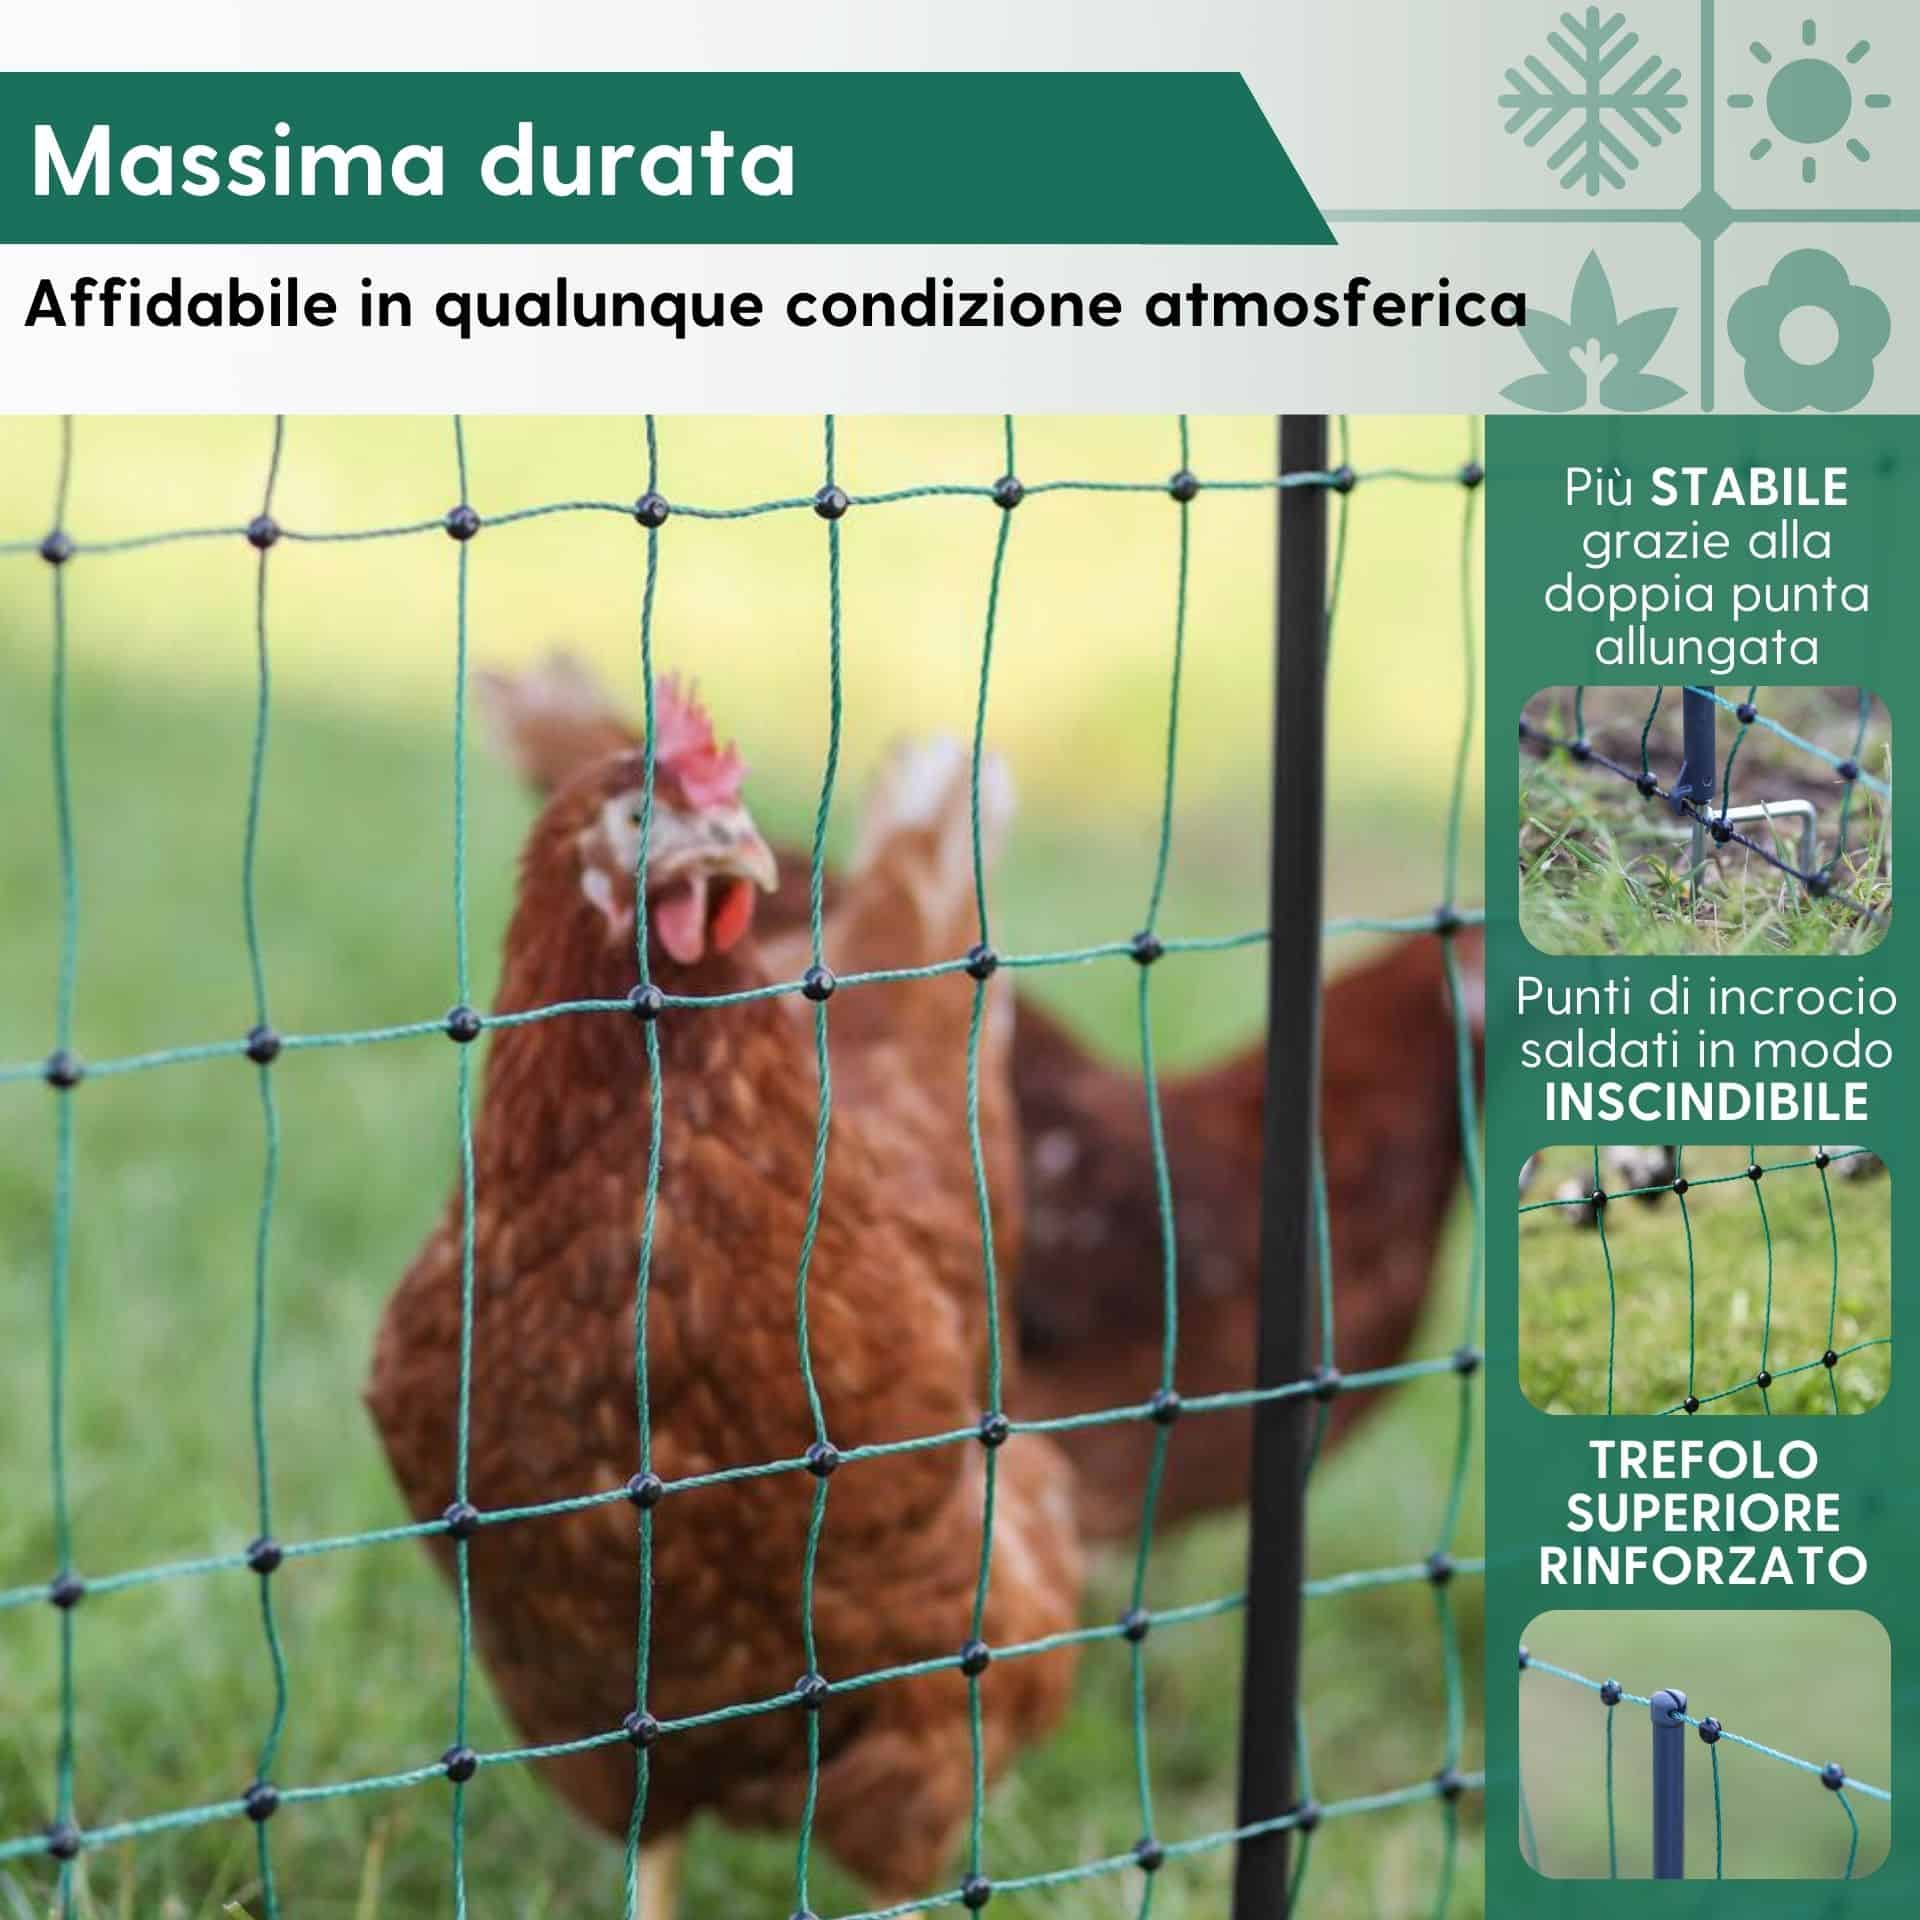 Agrarzone Rete per pollame CLASSIC non elettrificabile, doppia punta, verde 25 m x 112 cm